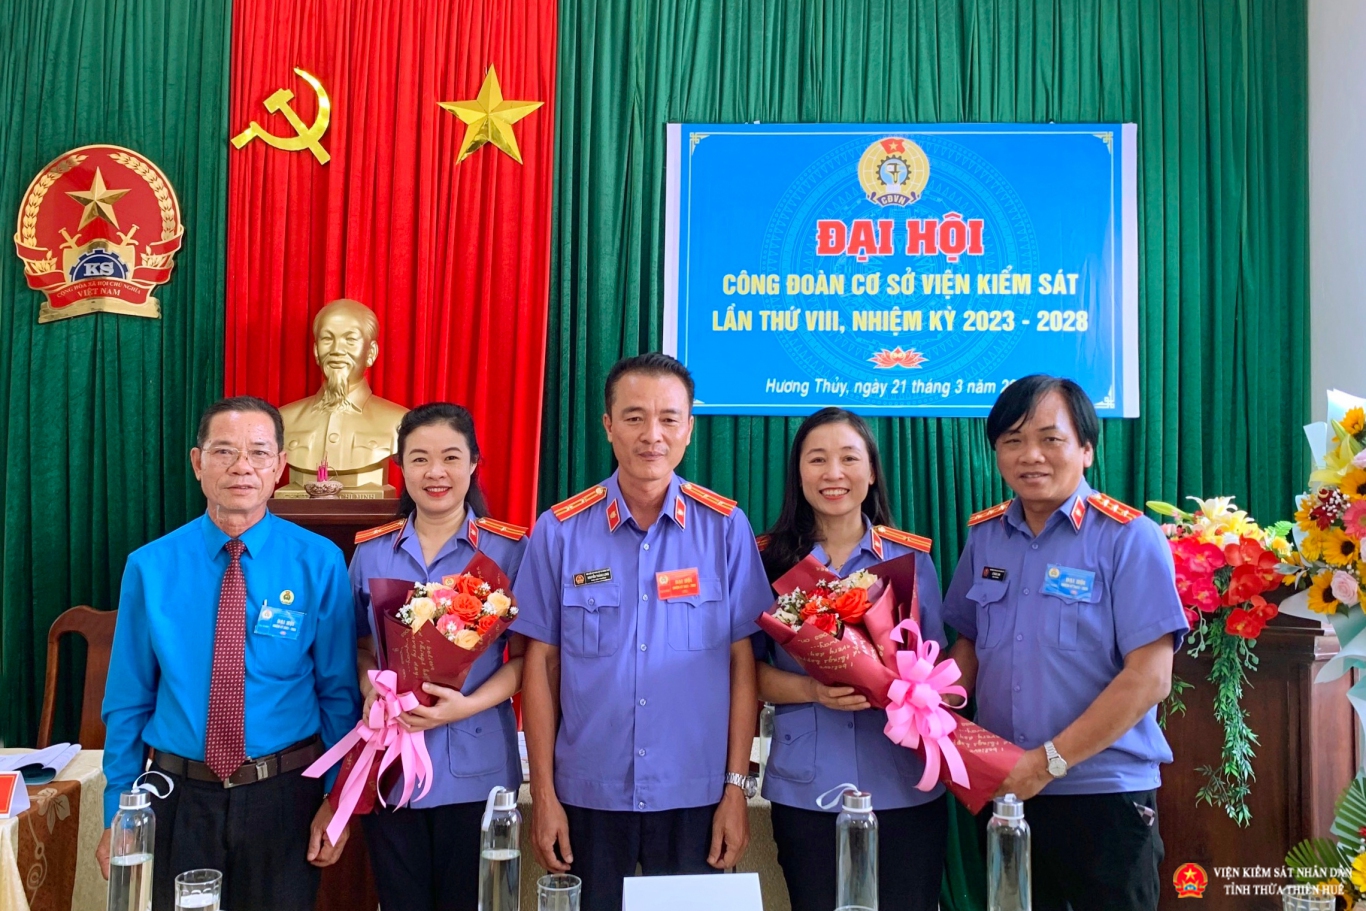 BCH Công đoàn Viện kiểm sát nhân dân thị xã Hương Thủy nhiệm kỳ 2023 – 2028 ra mắt nhận nhiệm vụ